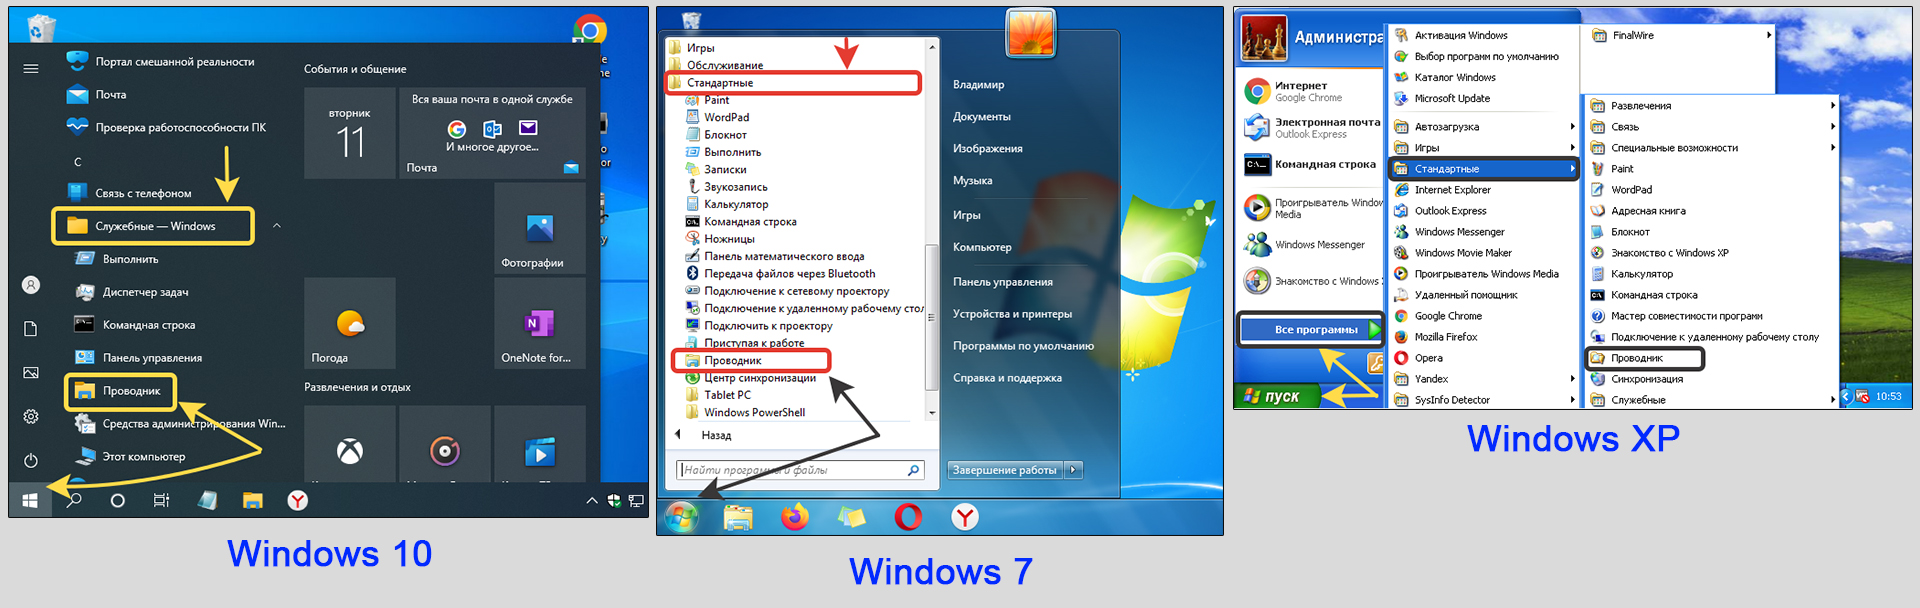 Как открыть проводник в Windows 10, 7 и XP с помощью директории меню Пуск.